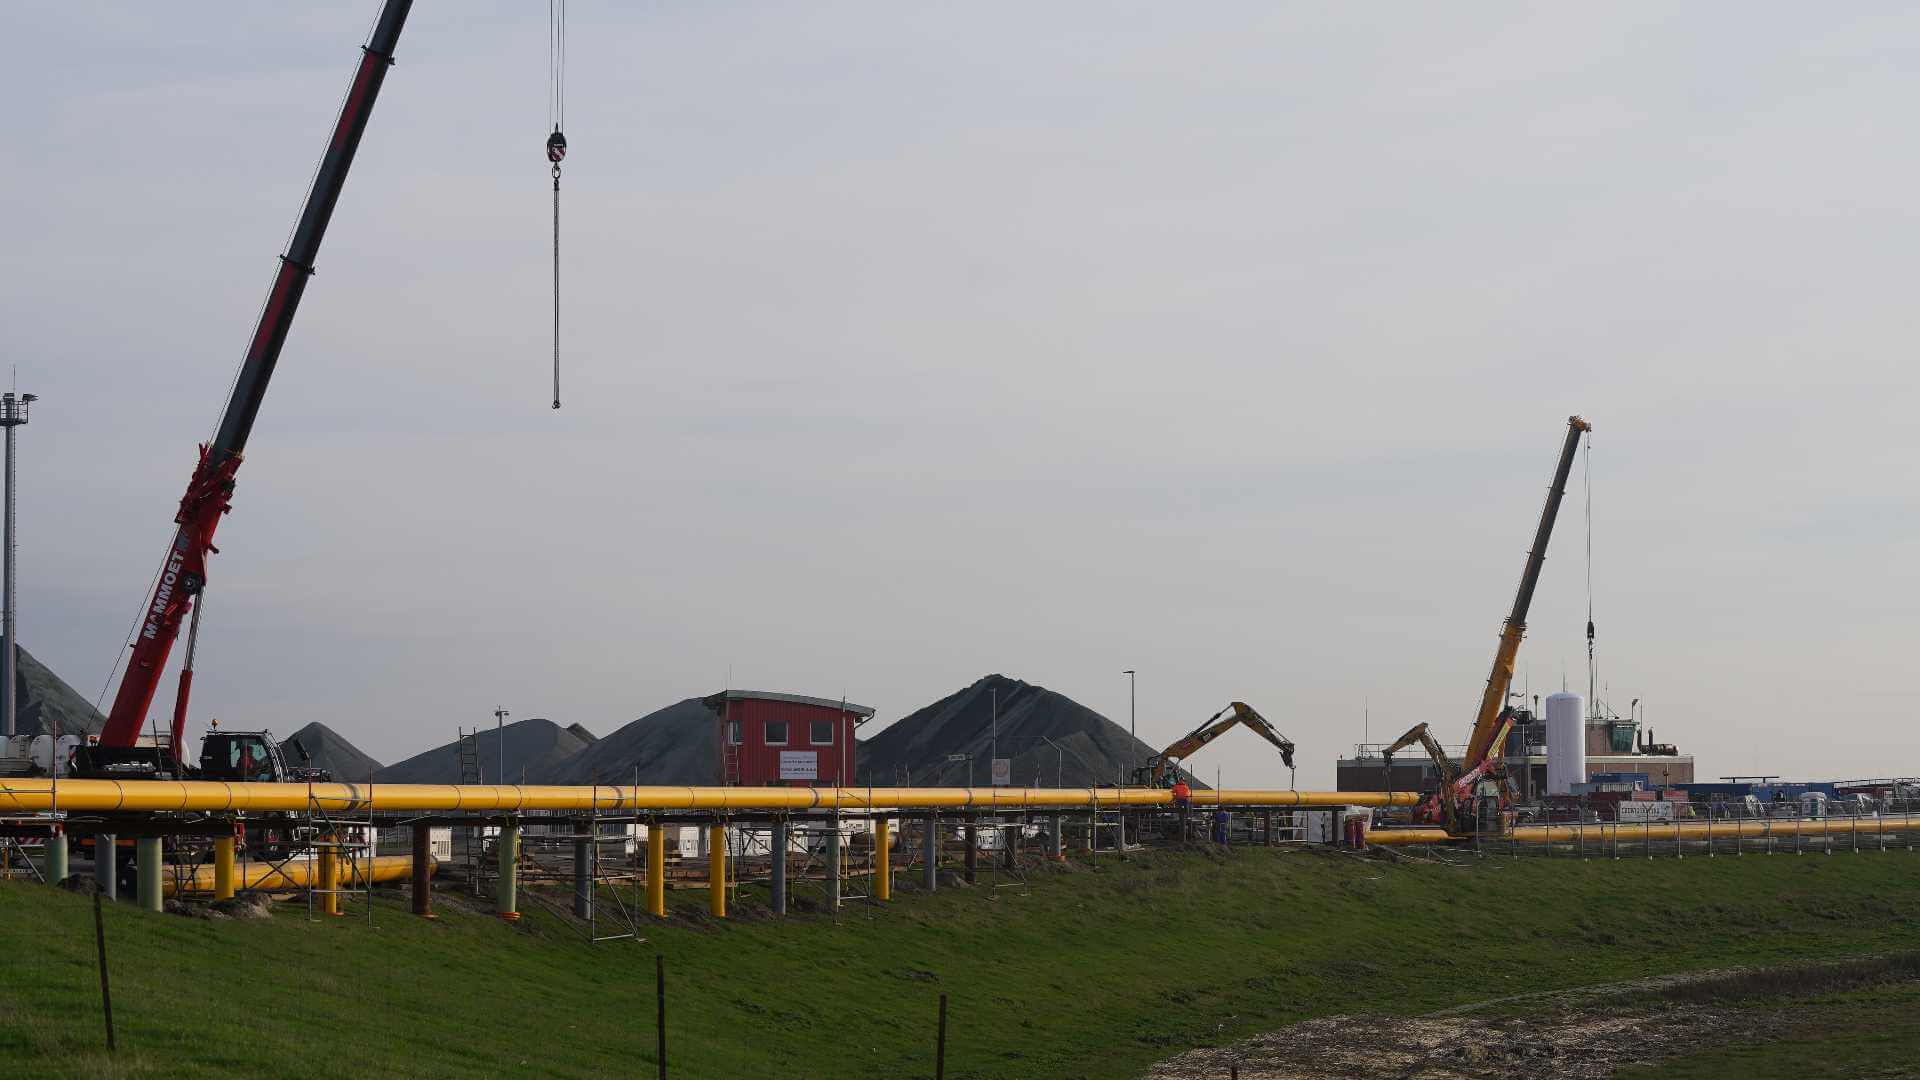 Arbeiter bauen Gas-Pipelines für den geplanten LNG-Flüssiggas-Schwimmterminal in Brunsbüttel zusammen. Das Schwimmterminal soll noch in diesem Jahr seine Arbeit aufnehmen.